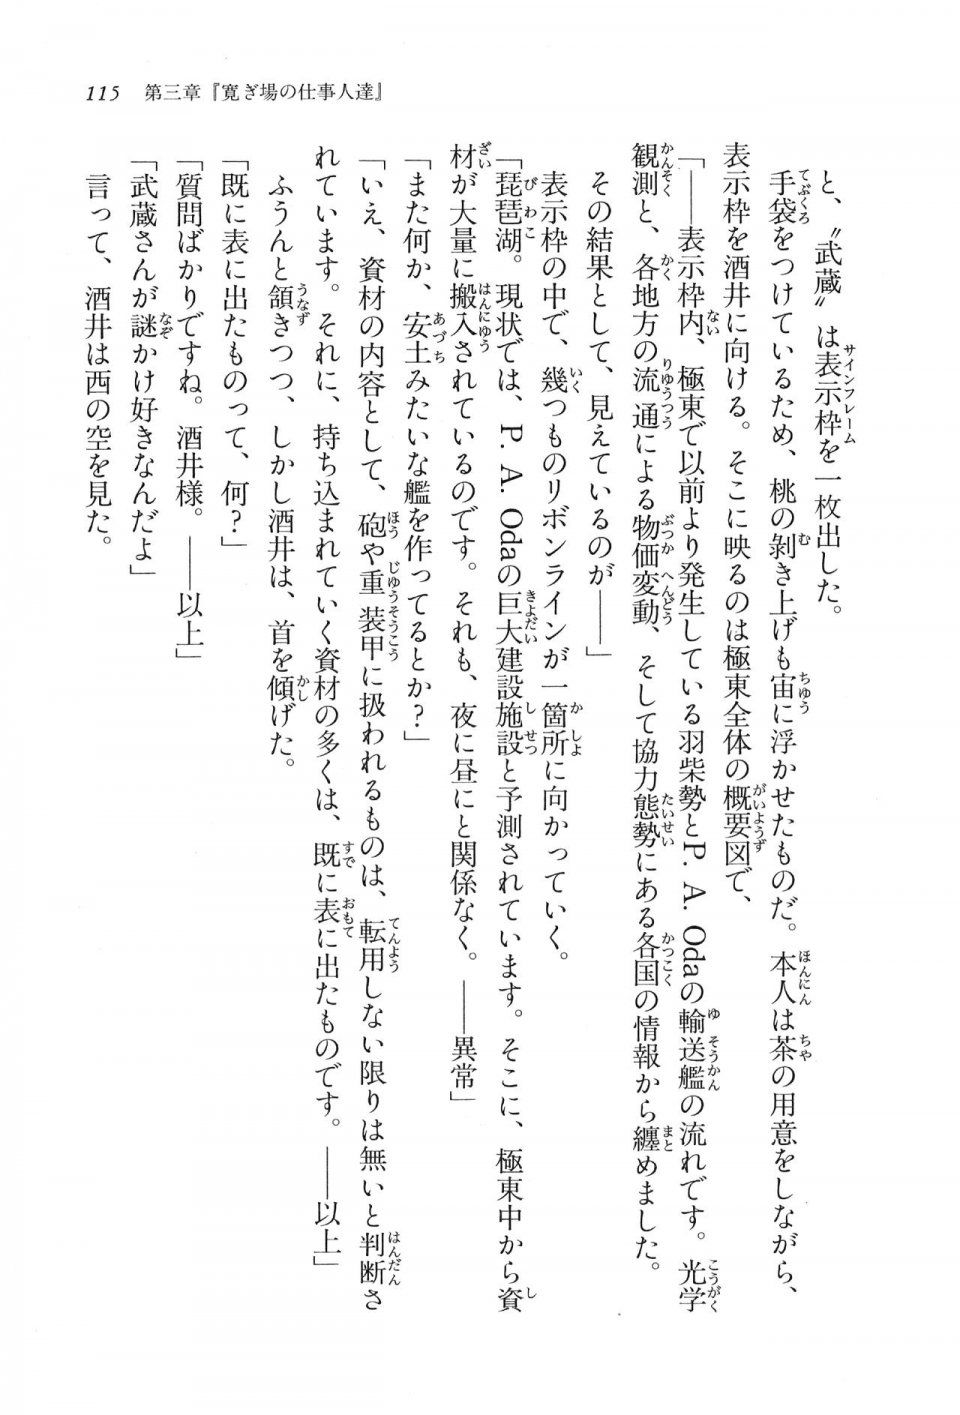 Kyoukai Senjou no Horizon LN Vol 16(7A) - Photo #115